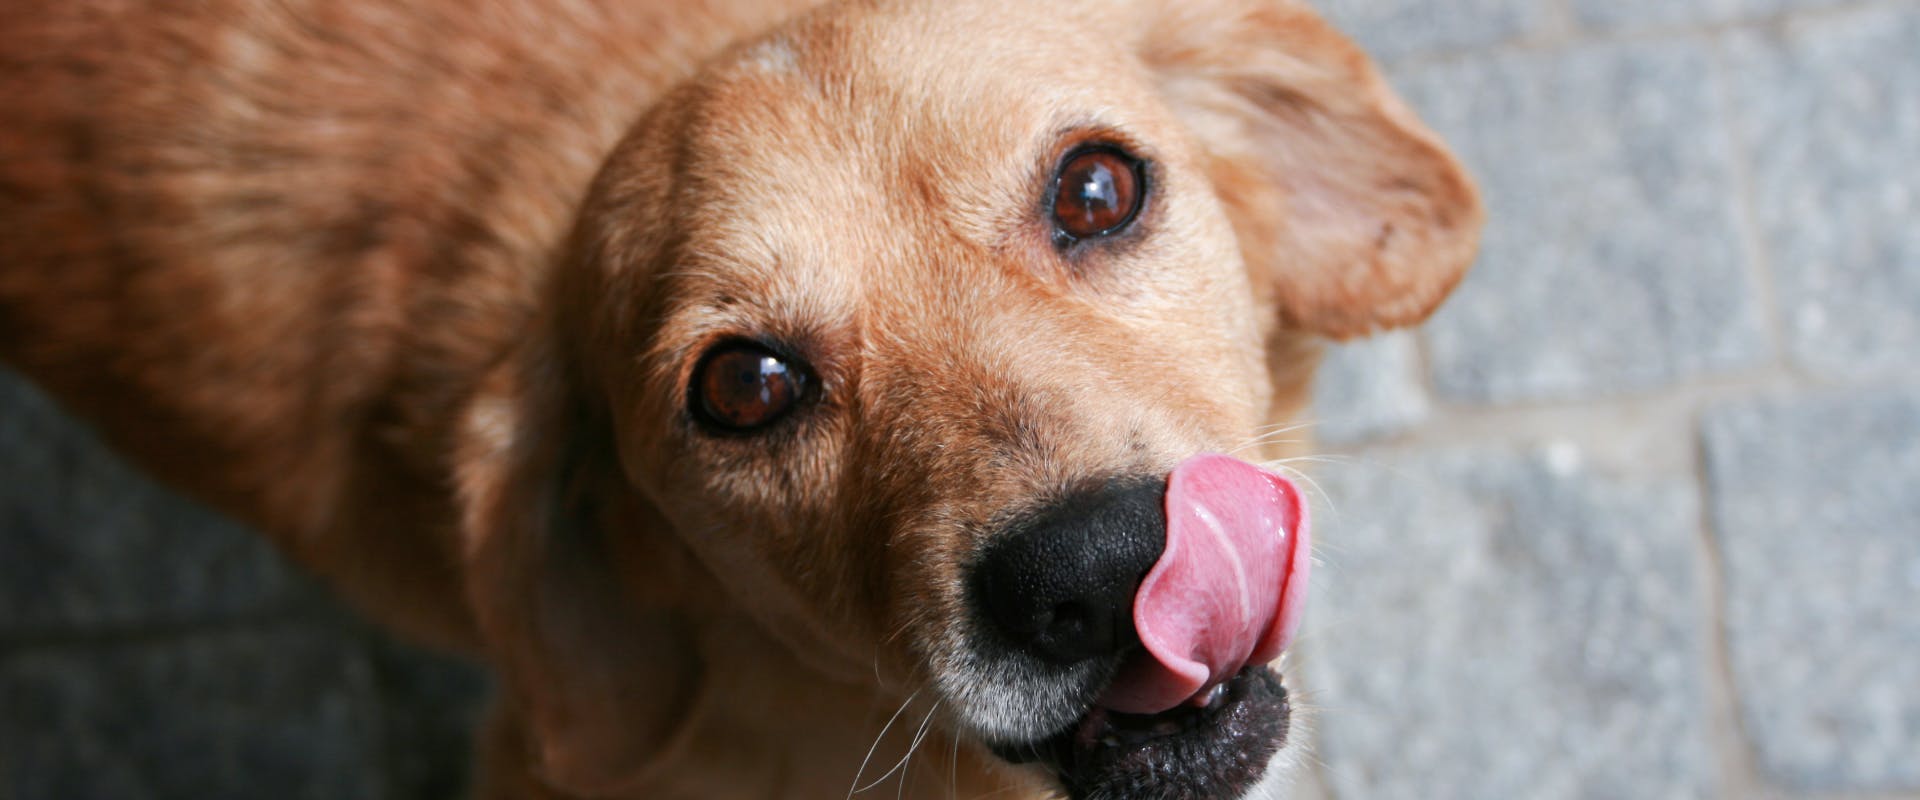 A dog lick its lips.